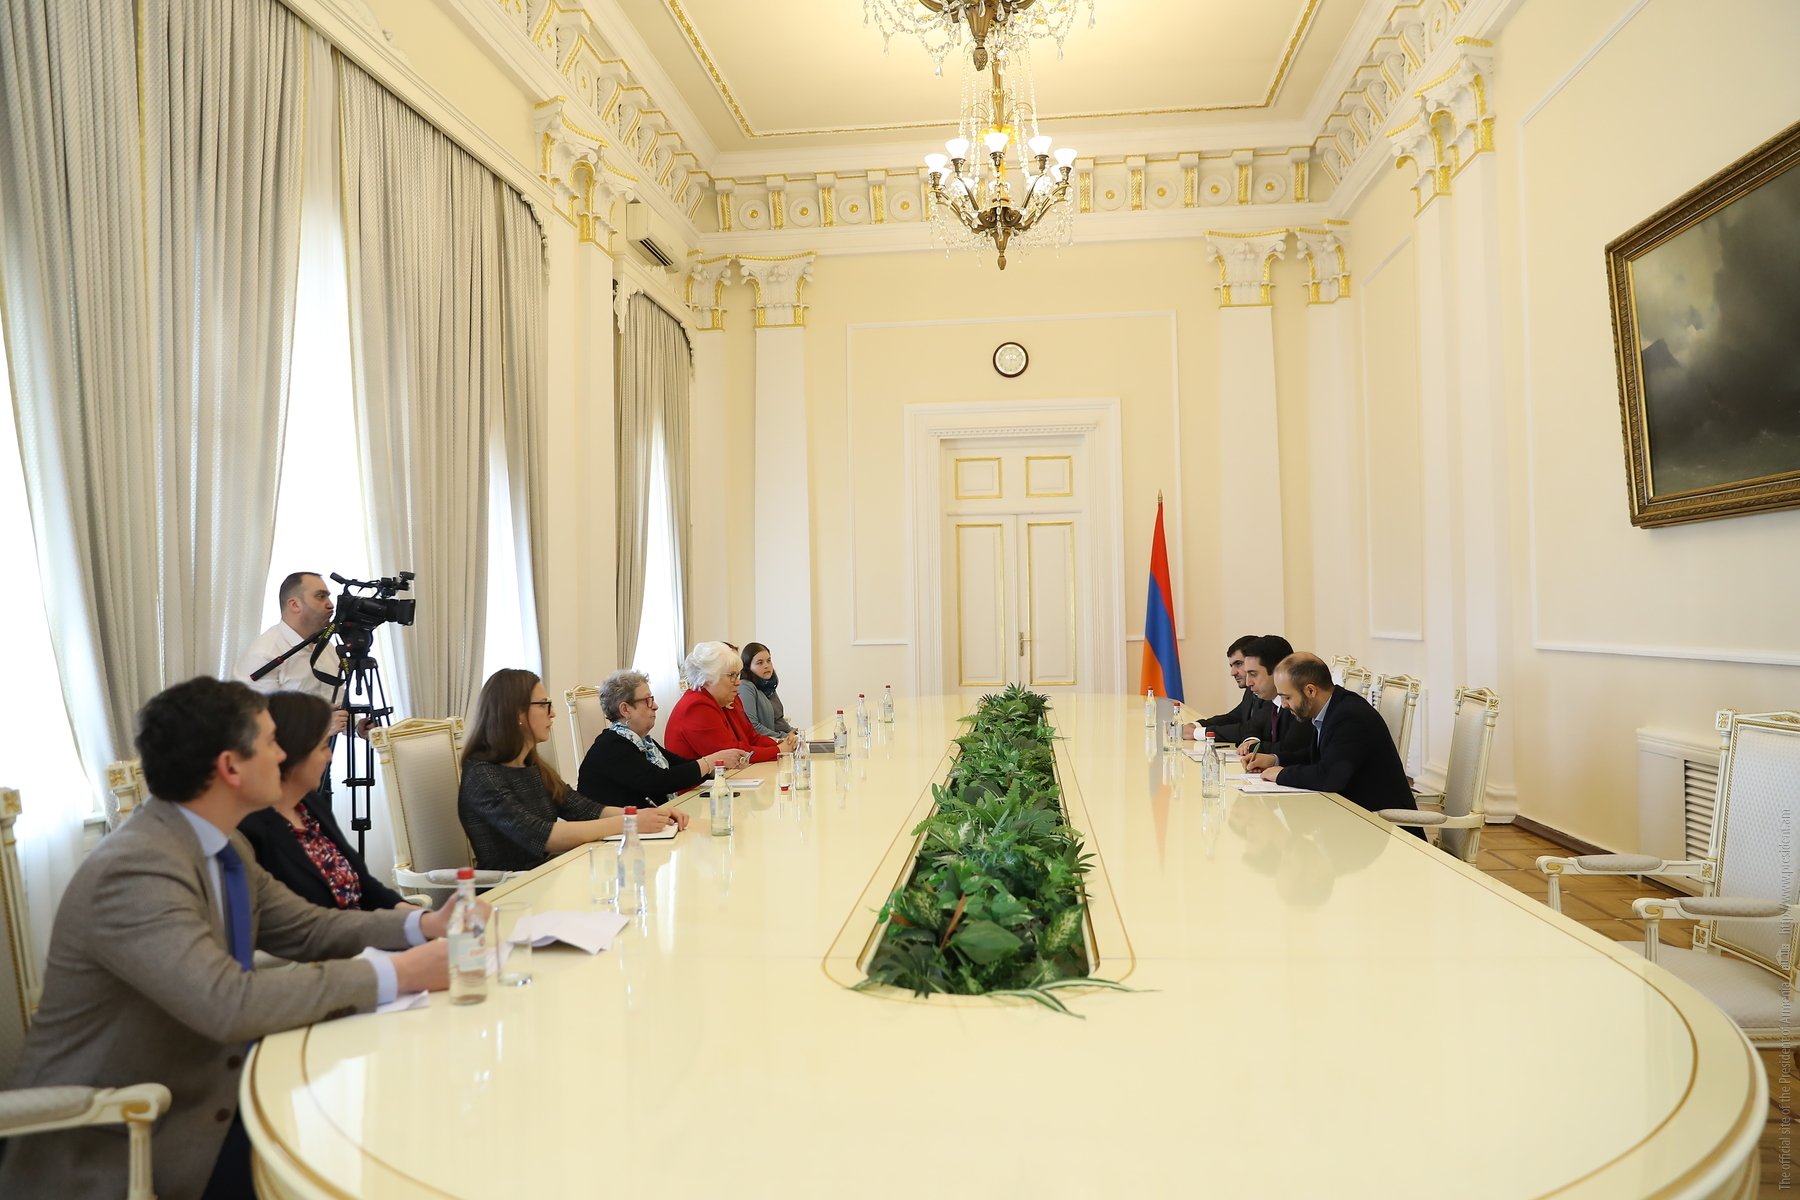 Ալեն Սիմոնյանն ընդունել է ԵՄ-Հայաստան խորհրդարանական գործընկերության կոմիտեի համանախագահ Մարինա Կալյուրանդի գլխավորած պատվիրակությանը